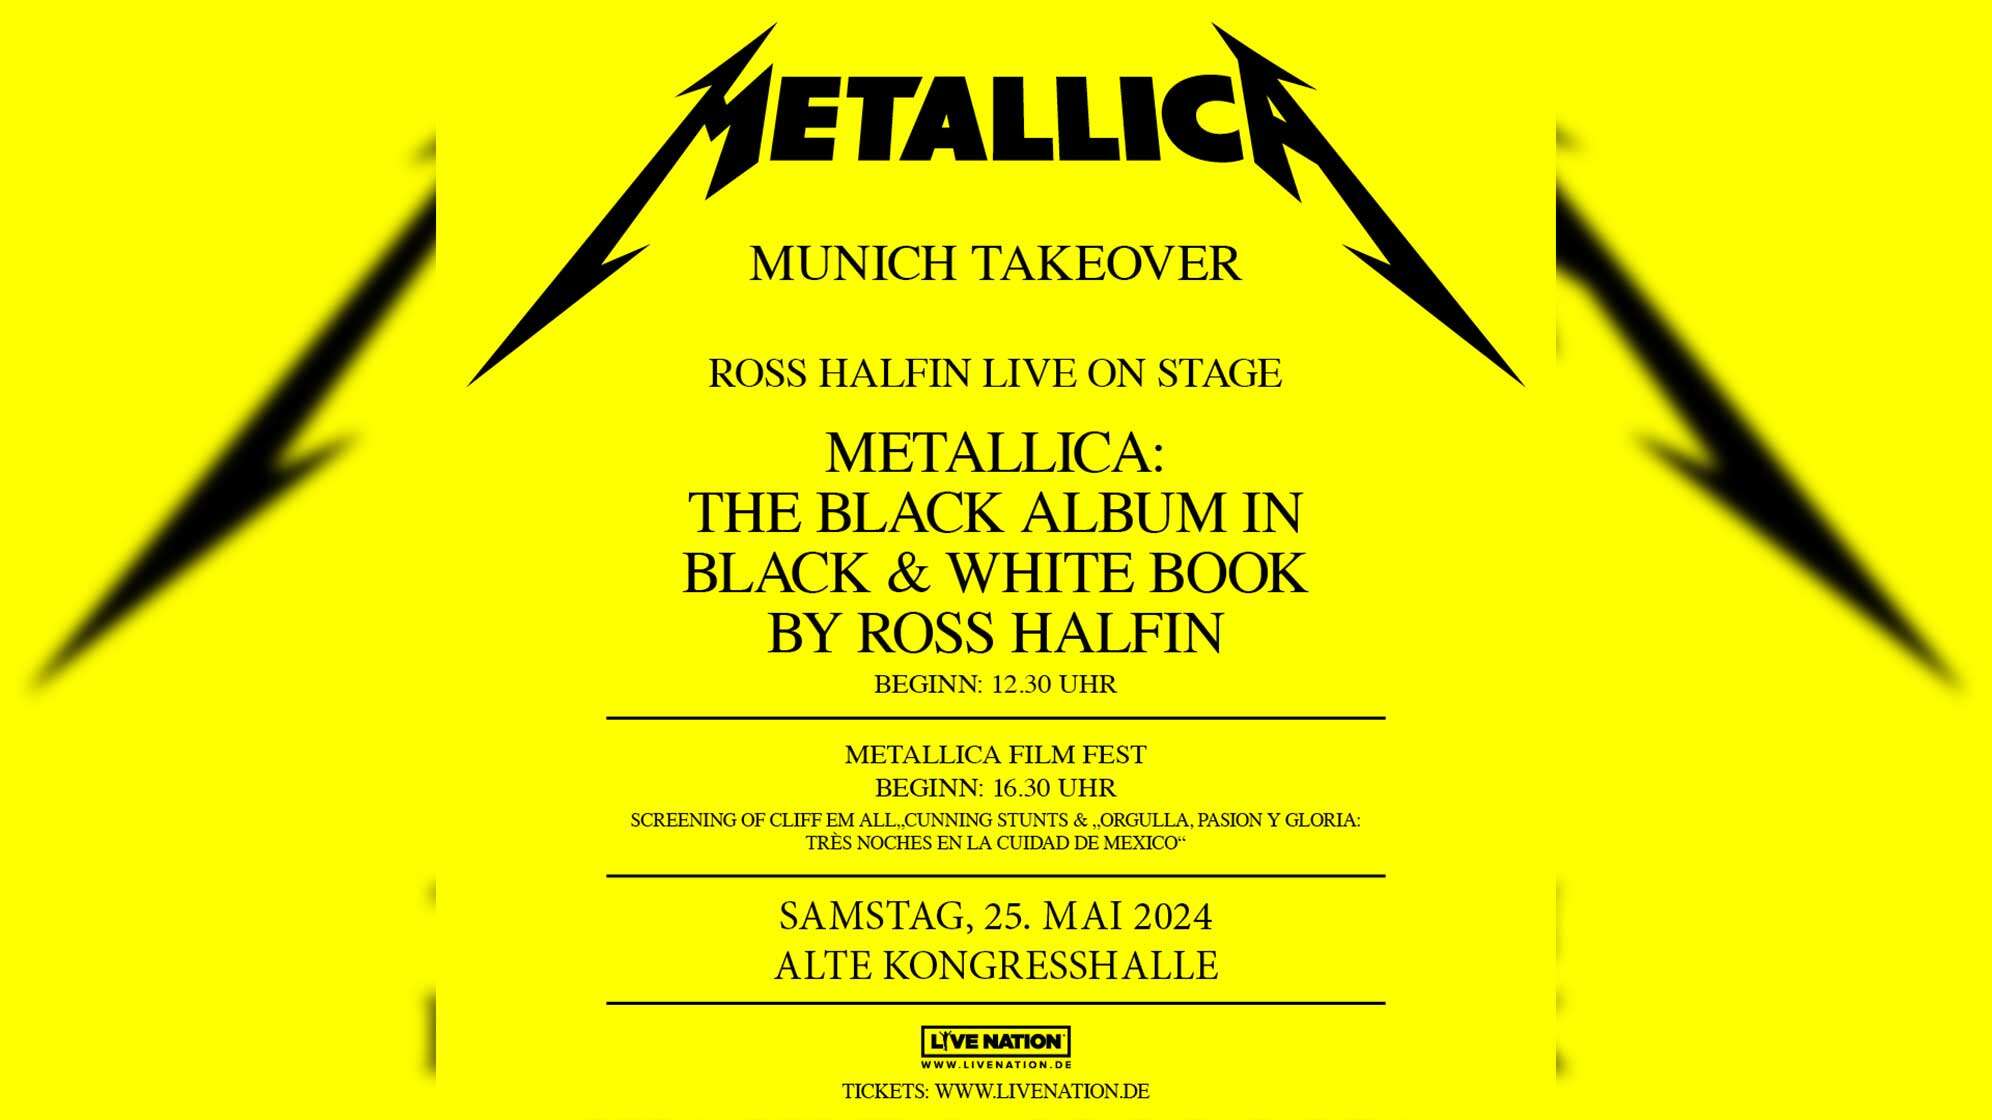 Plakatfoto vom Metallica Takeover Munich